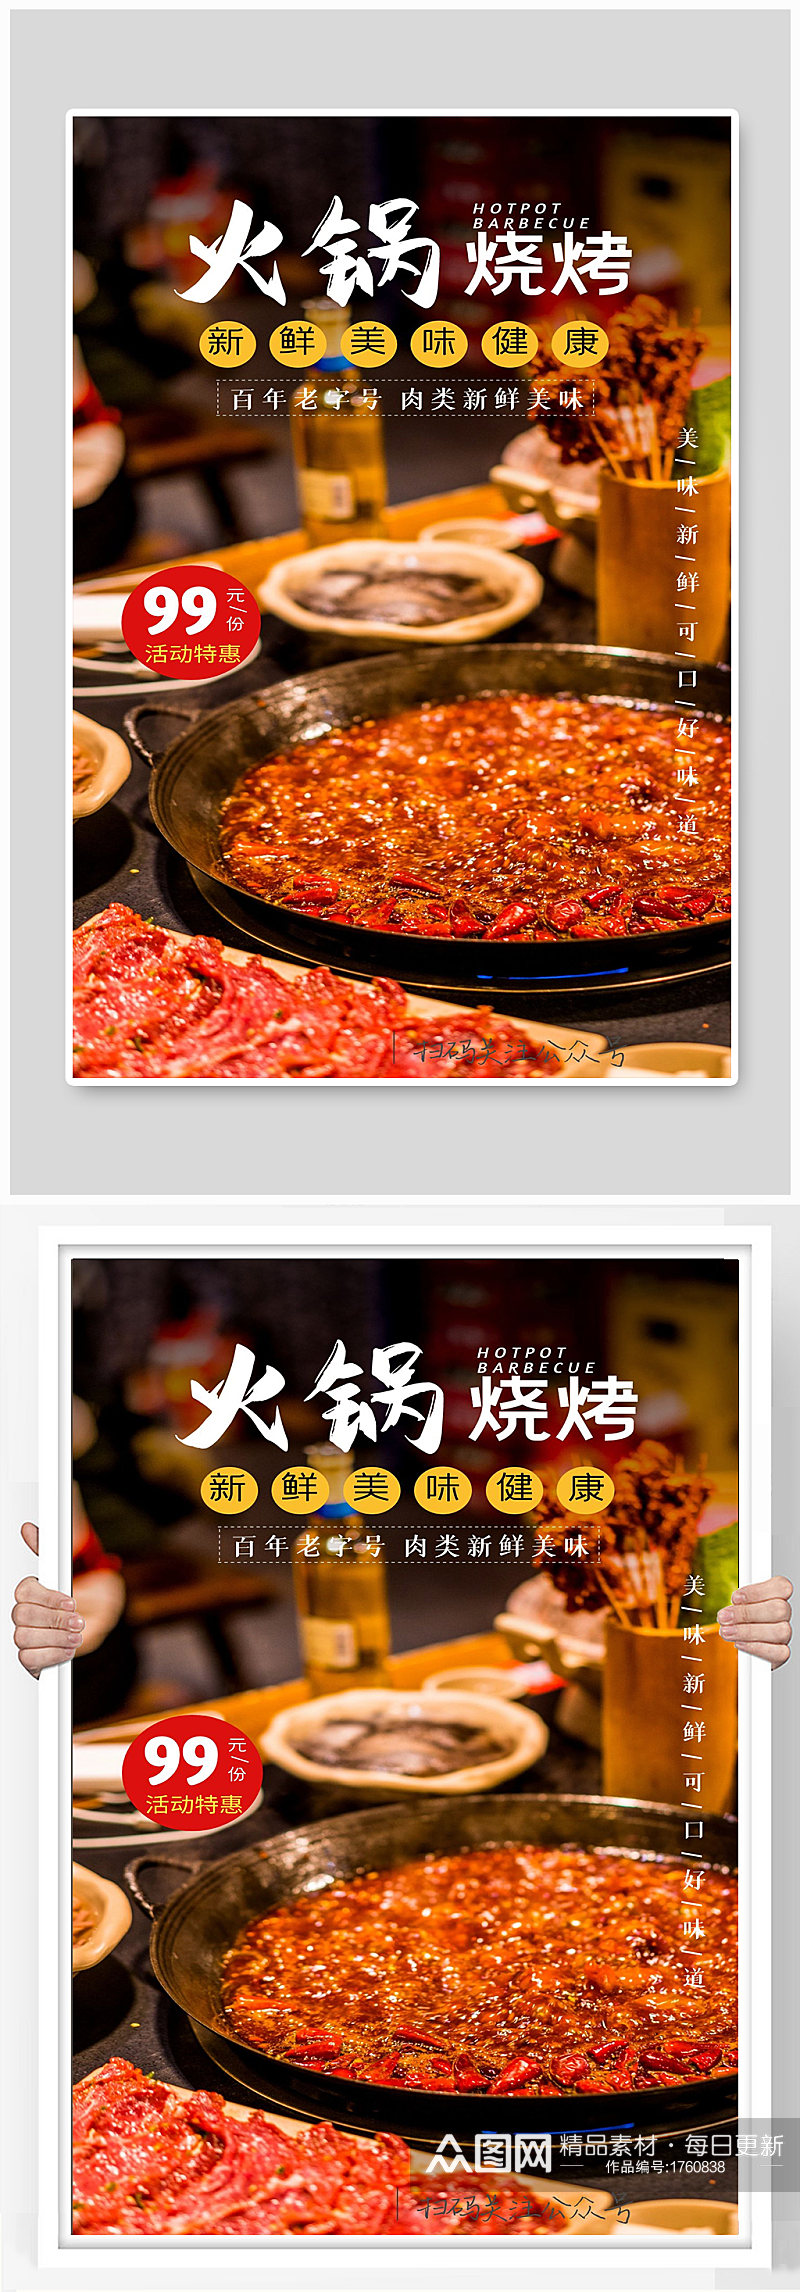 火锅烧烤百年老店新鲜美味健康宣传海报制作素材